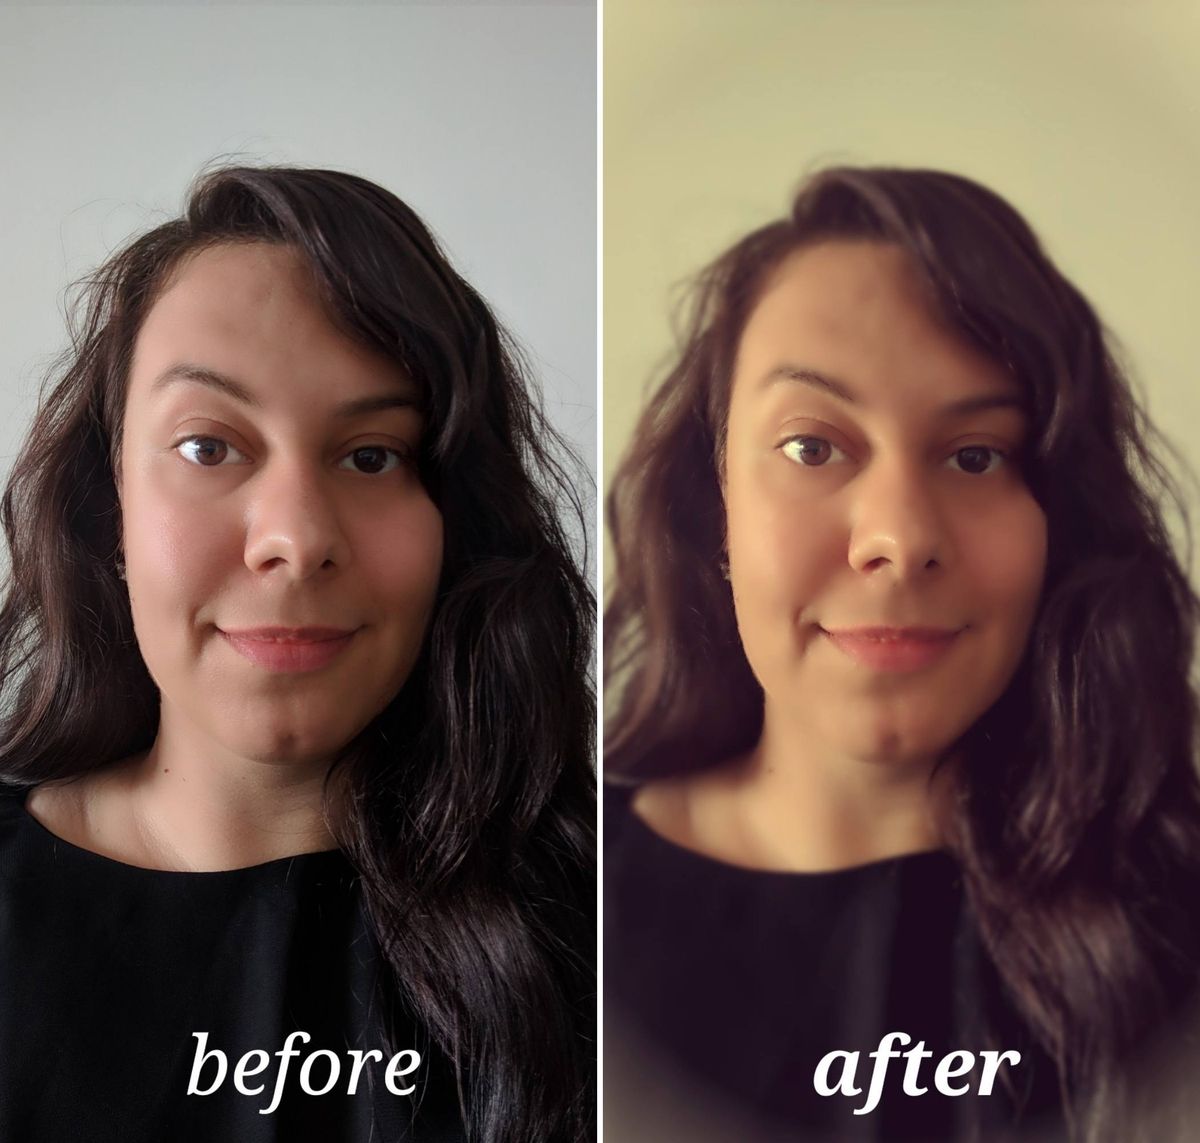 Pixlr antes y después de la edición